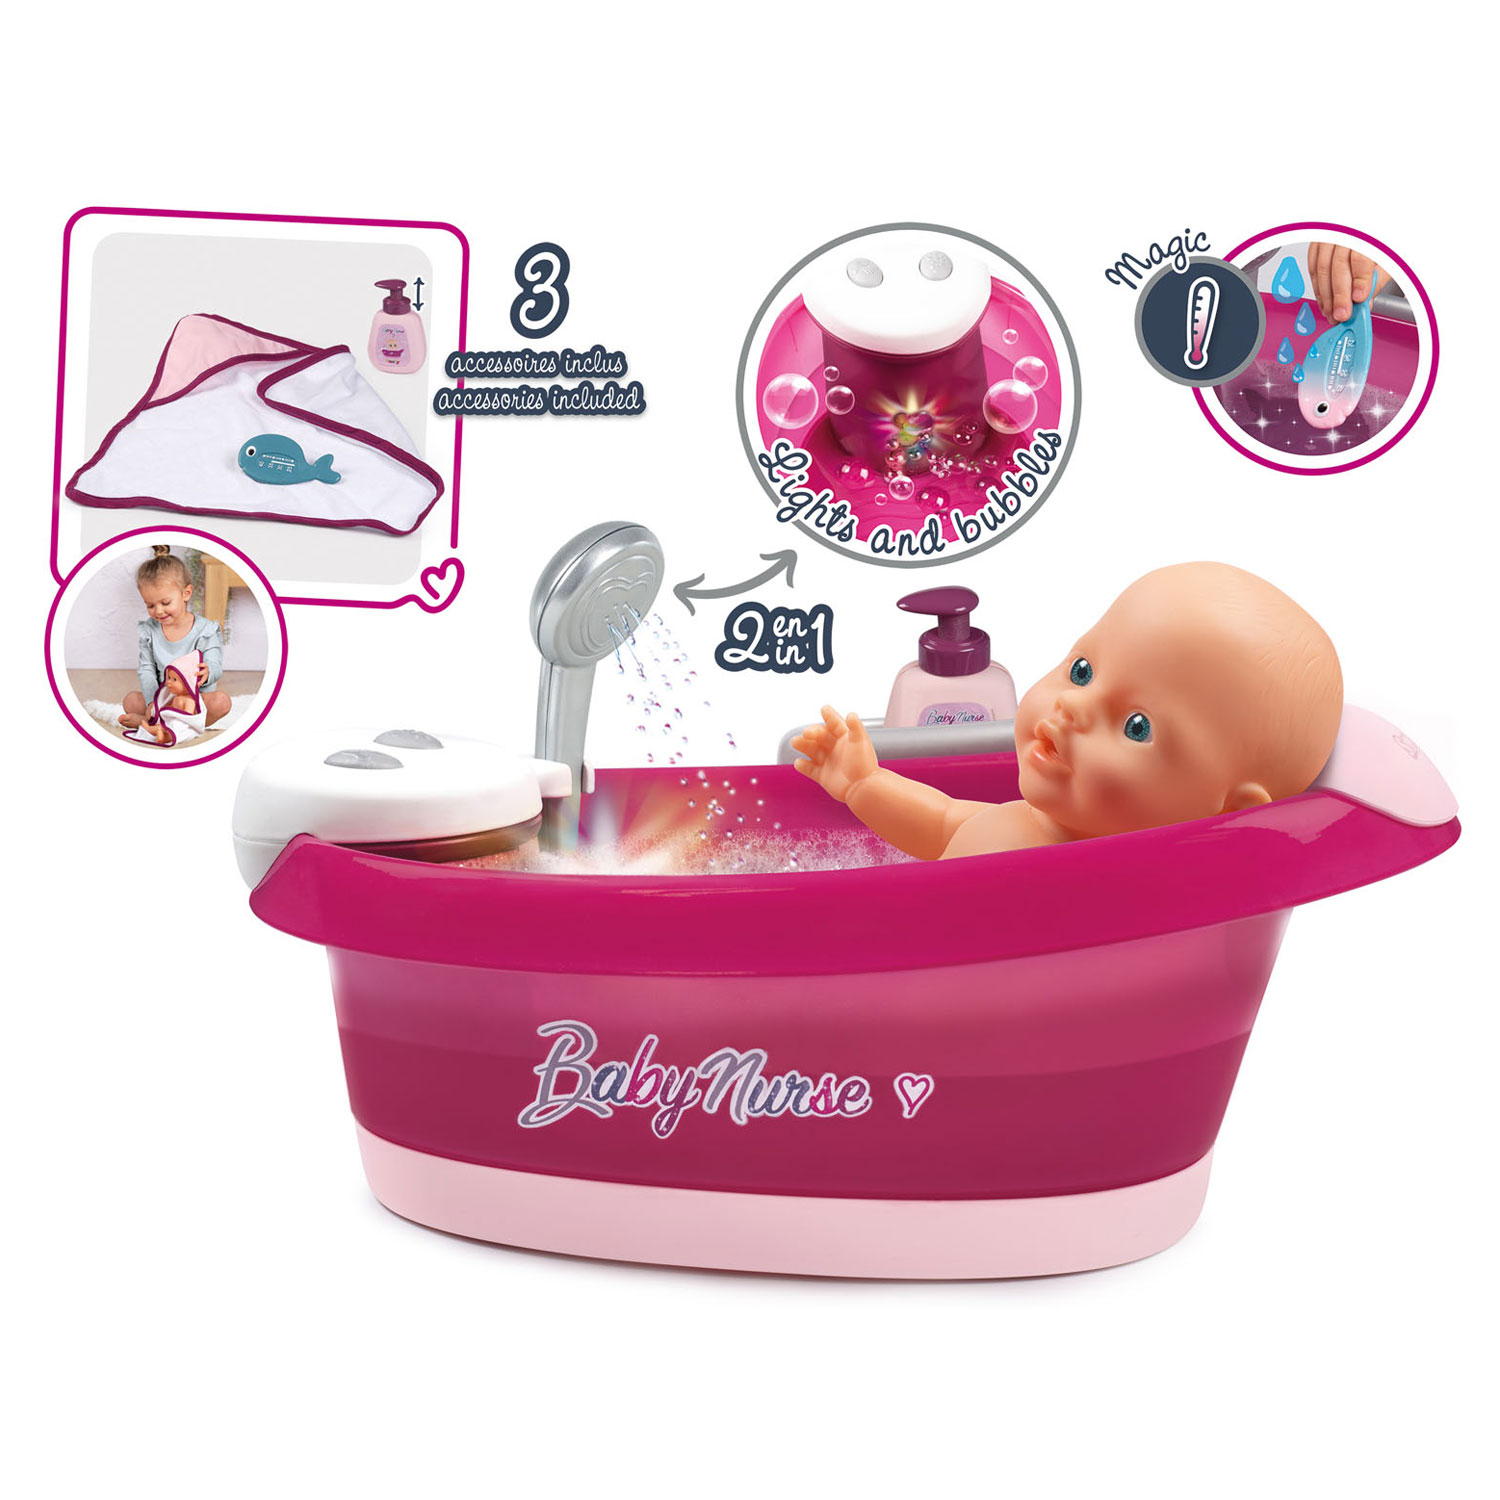 Smoby Baby Nurse doll bathtub 220330 pink